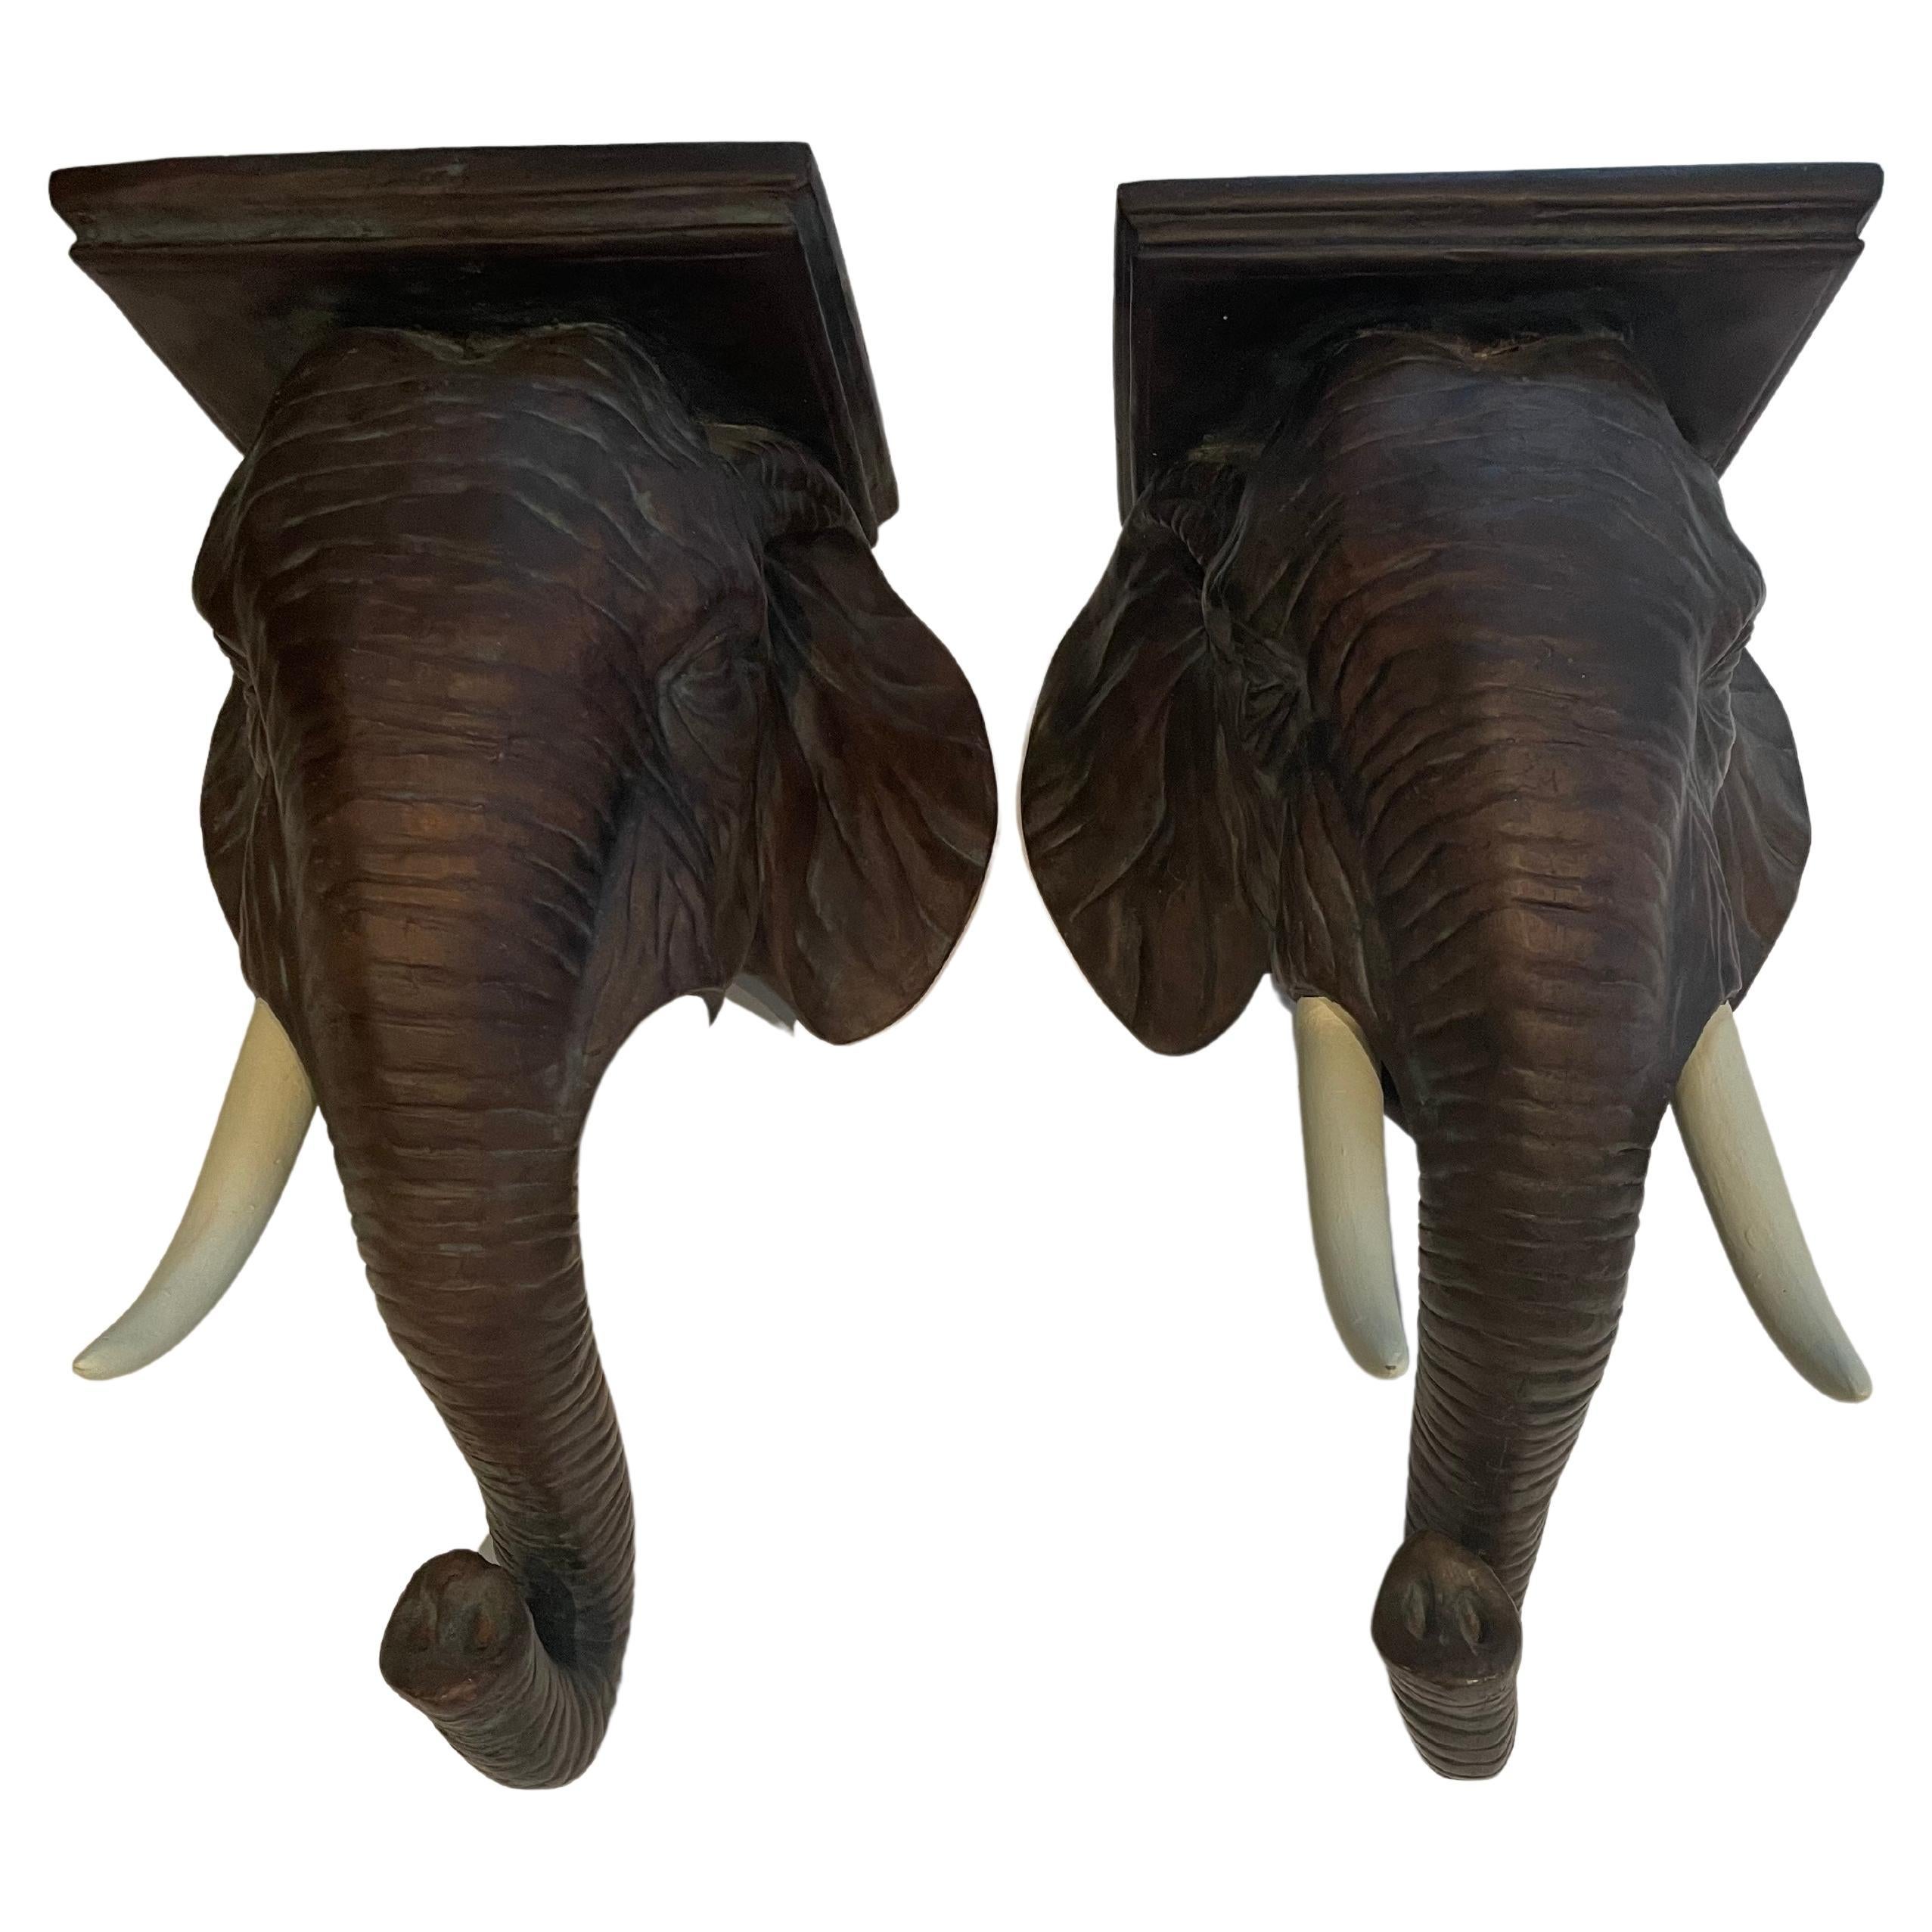 Paire remarquable de supports muraux sculpturaux en forme d'éléphant